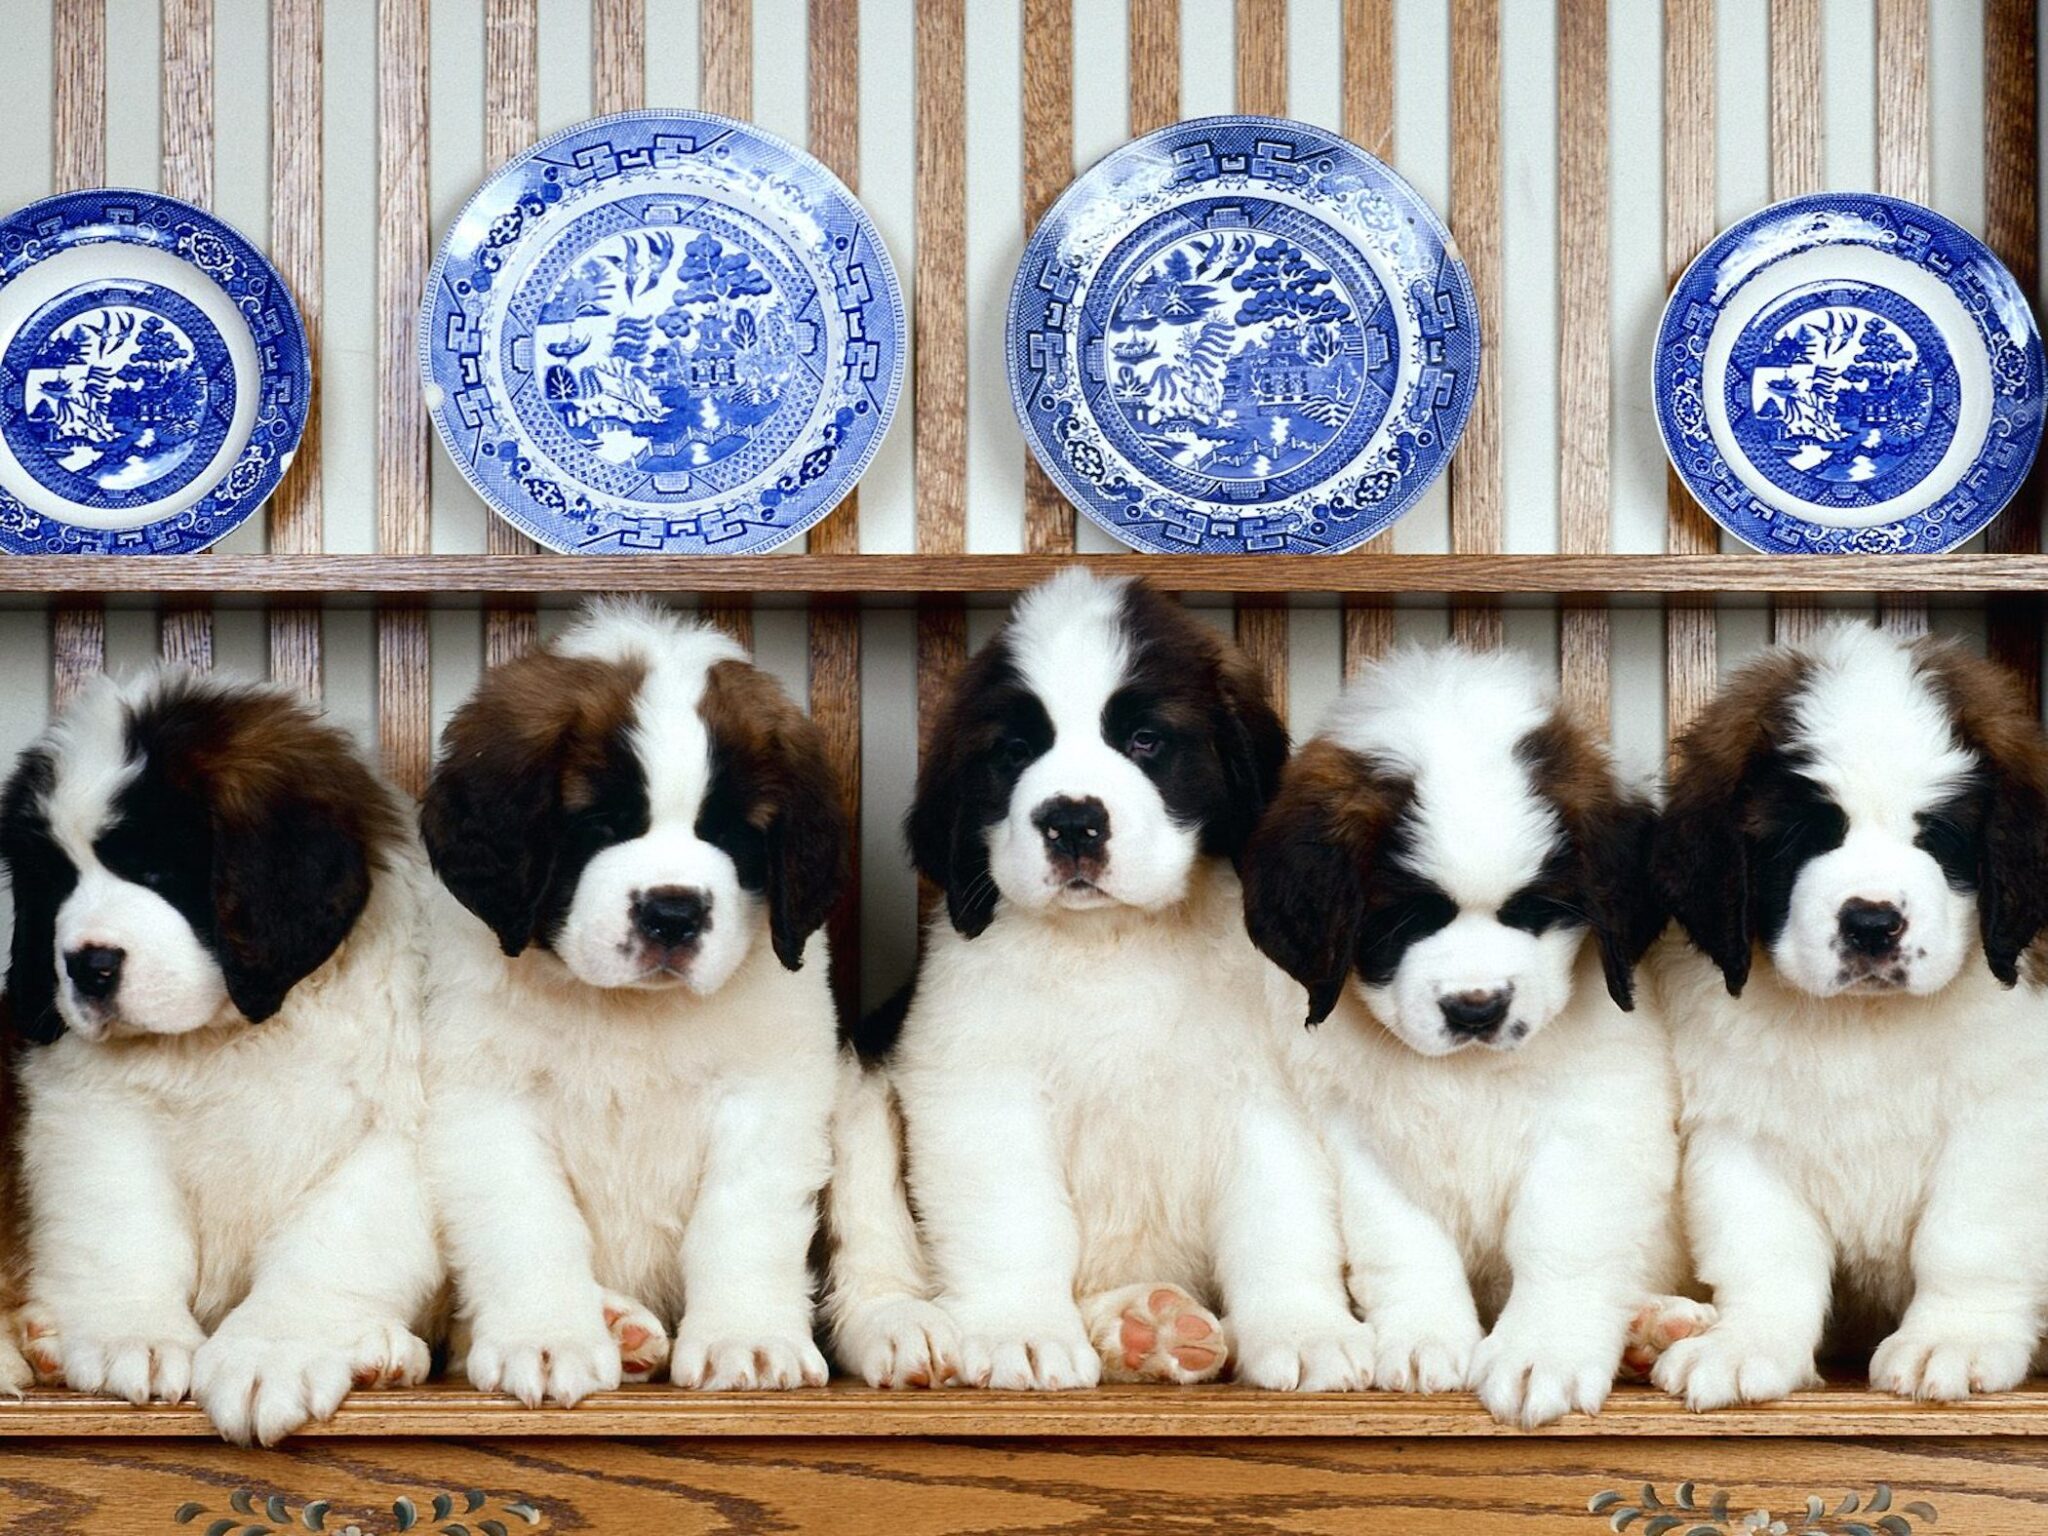 St Bernard Puppies Wallpaper-Free Cute Dog Downloads